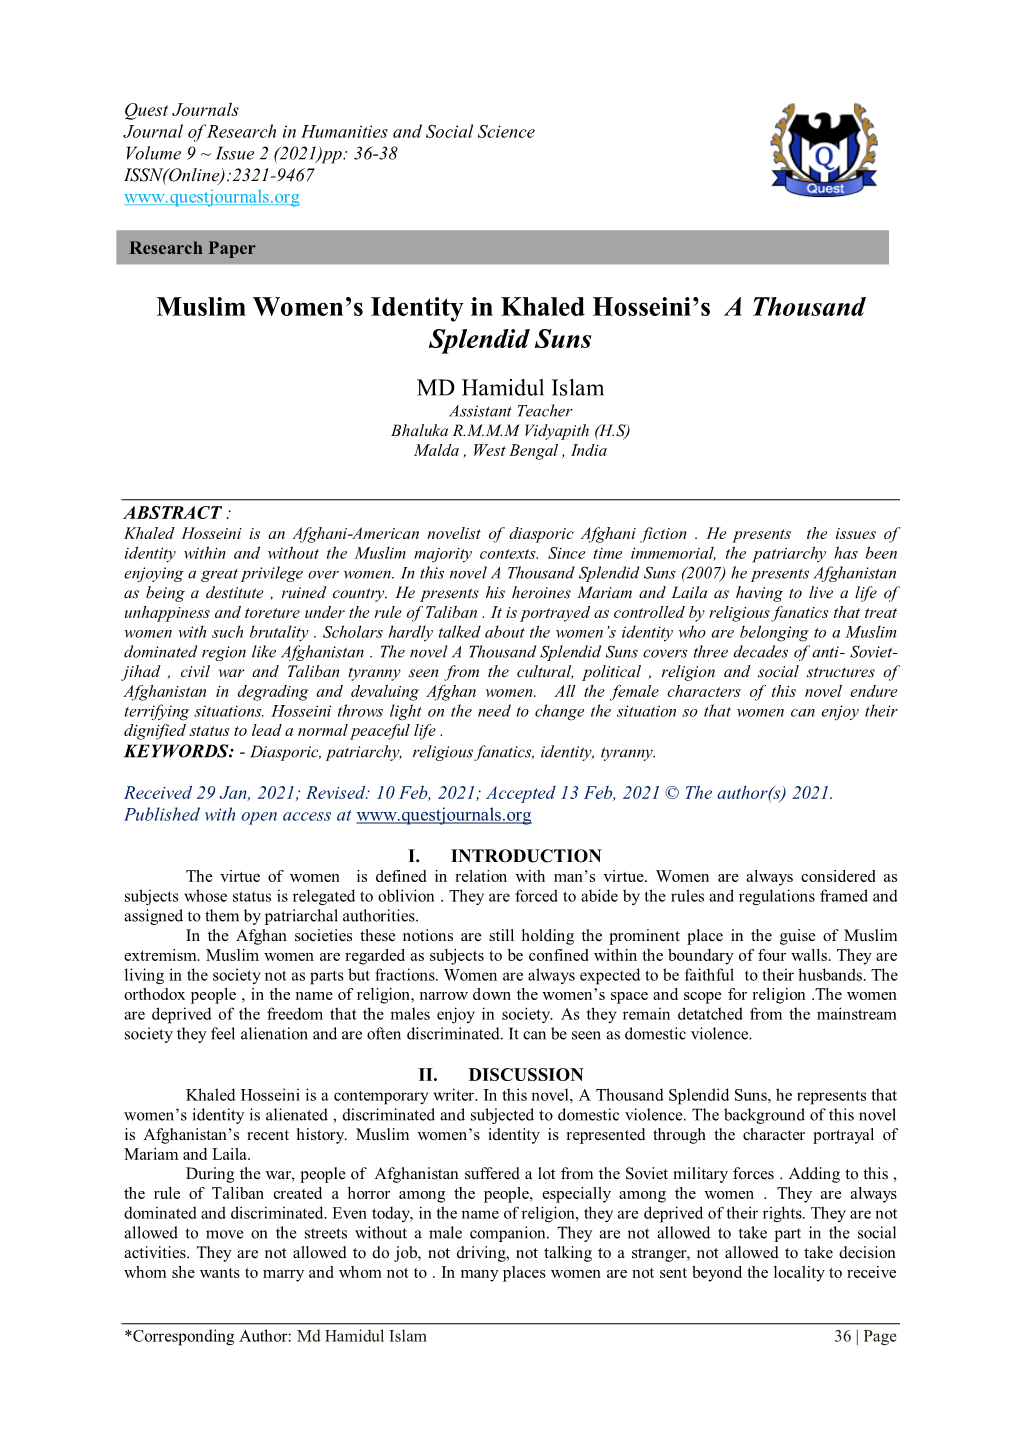 Muslim Women's Identity in Khaled Hosseini's a Thousand Splendid